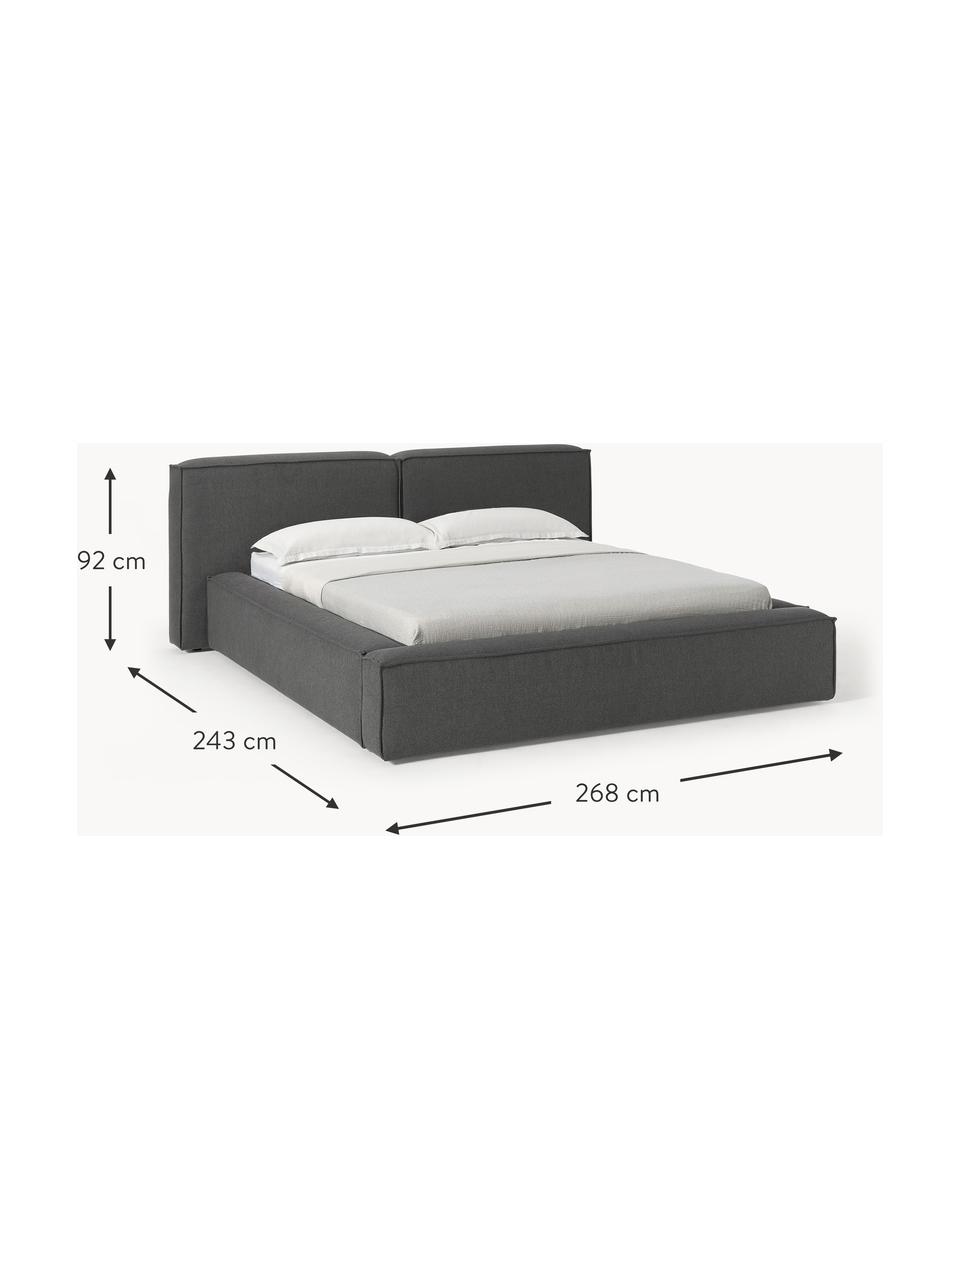 Čalouněná postel Lennon, Antracitová, Š 208 cm, D 243 cm (plocha k ležení 140 cm x 200 cm)